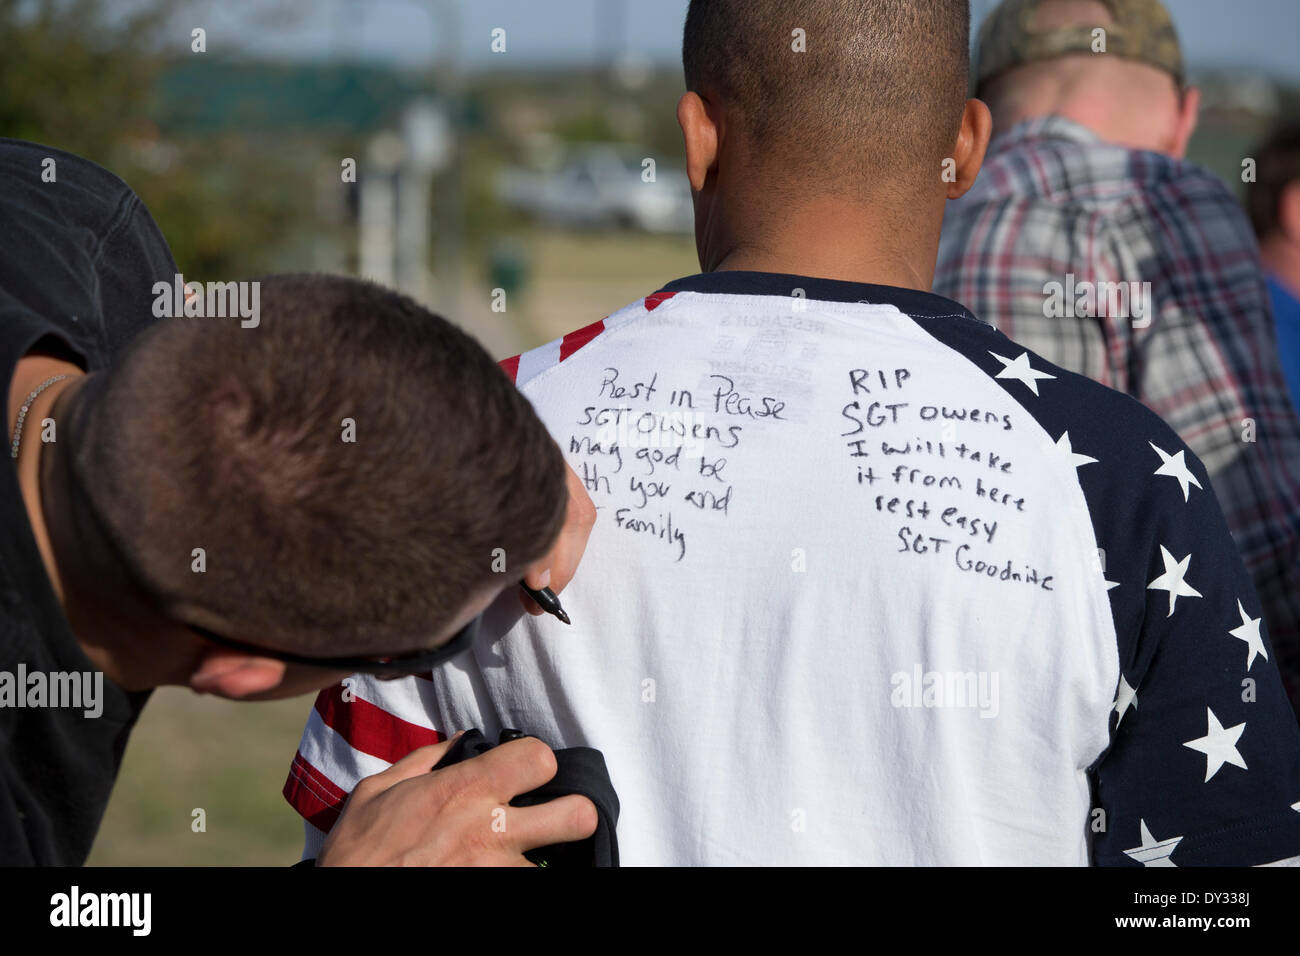 Un soldat américain écrit un mémoire sur une chemise à l'appui de Fort Hood Poste de l'armée aux soldats et aux familles après un shooter sur l'après la mort des soldats 4. Banque D'Images